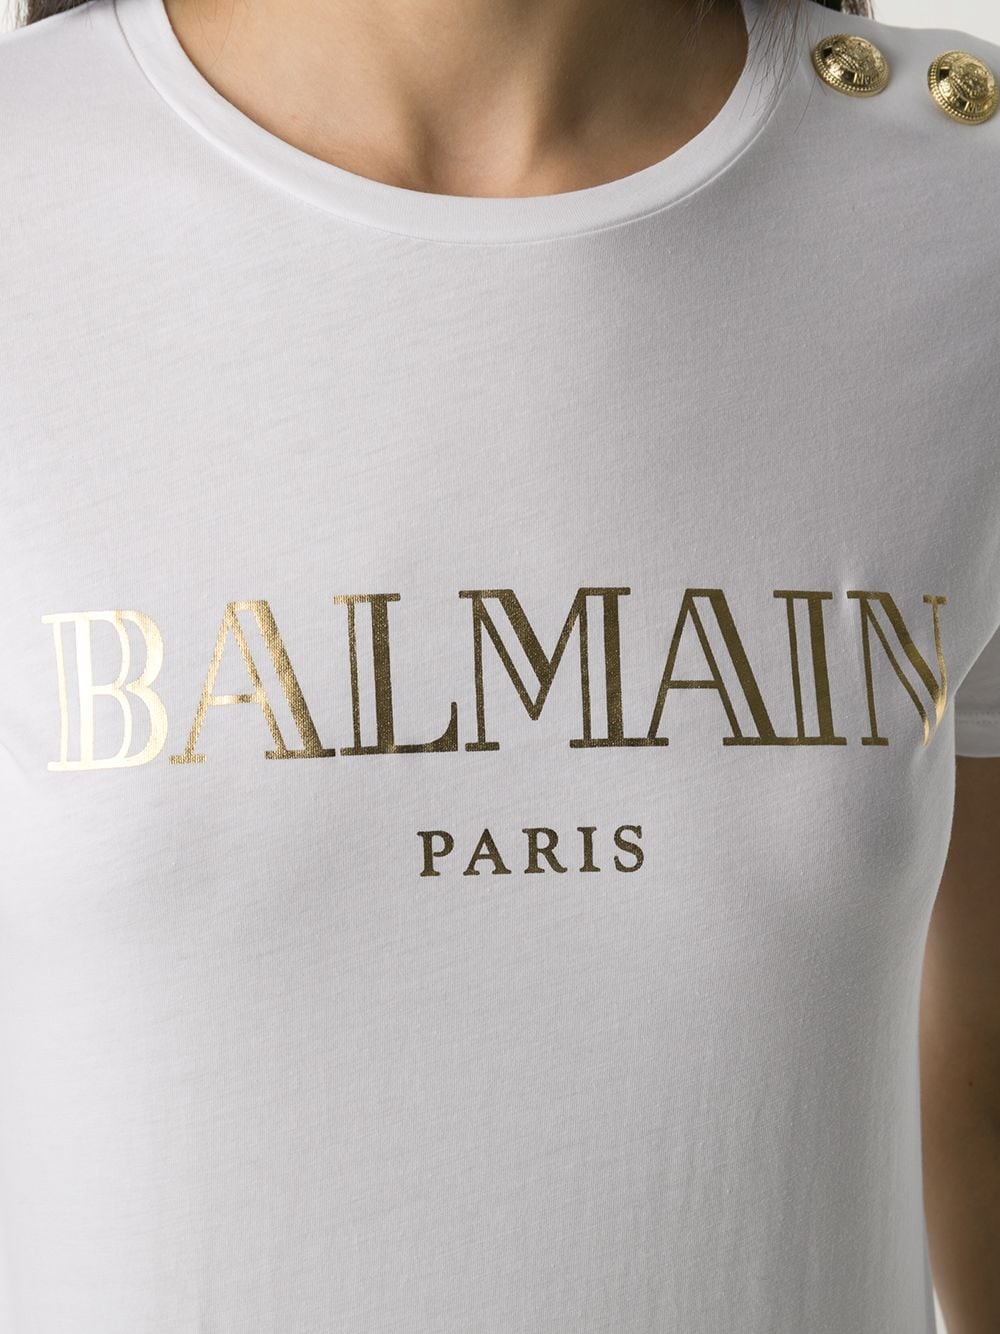 話題の人気 バルマン tシャツ ロゴ - tシャツ(半袖/袖なし 